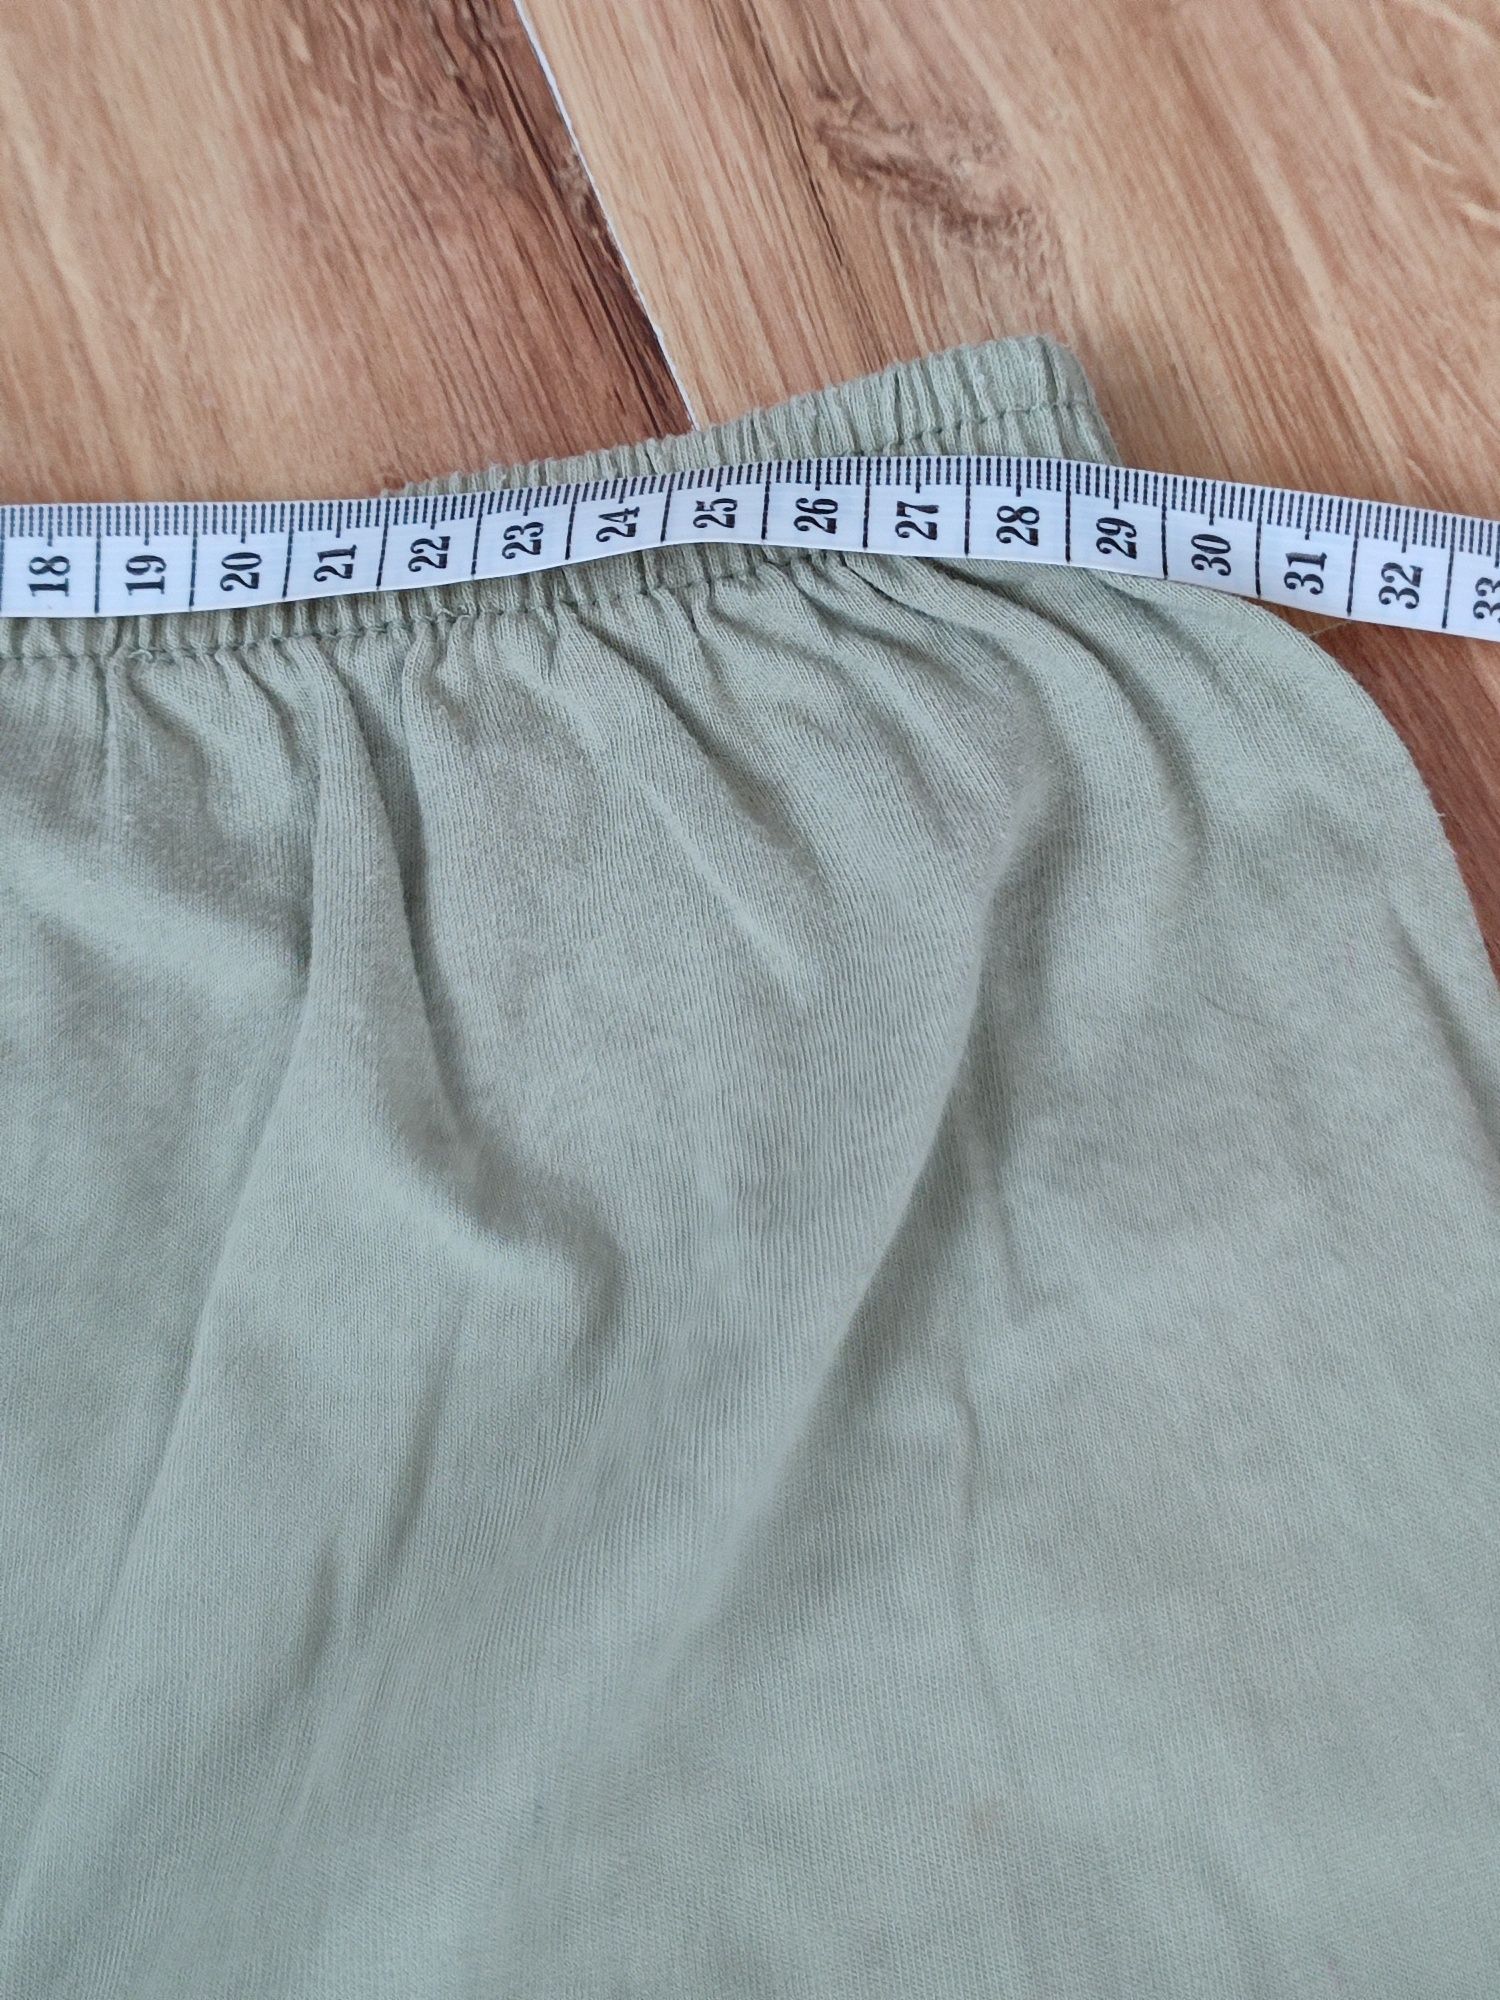 Pidżama chłopięca długi rękaw + spodnie rozm 146/152 cm